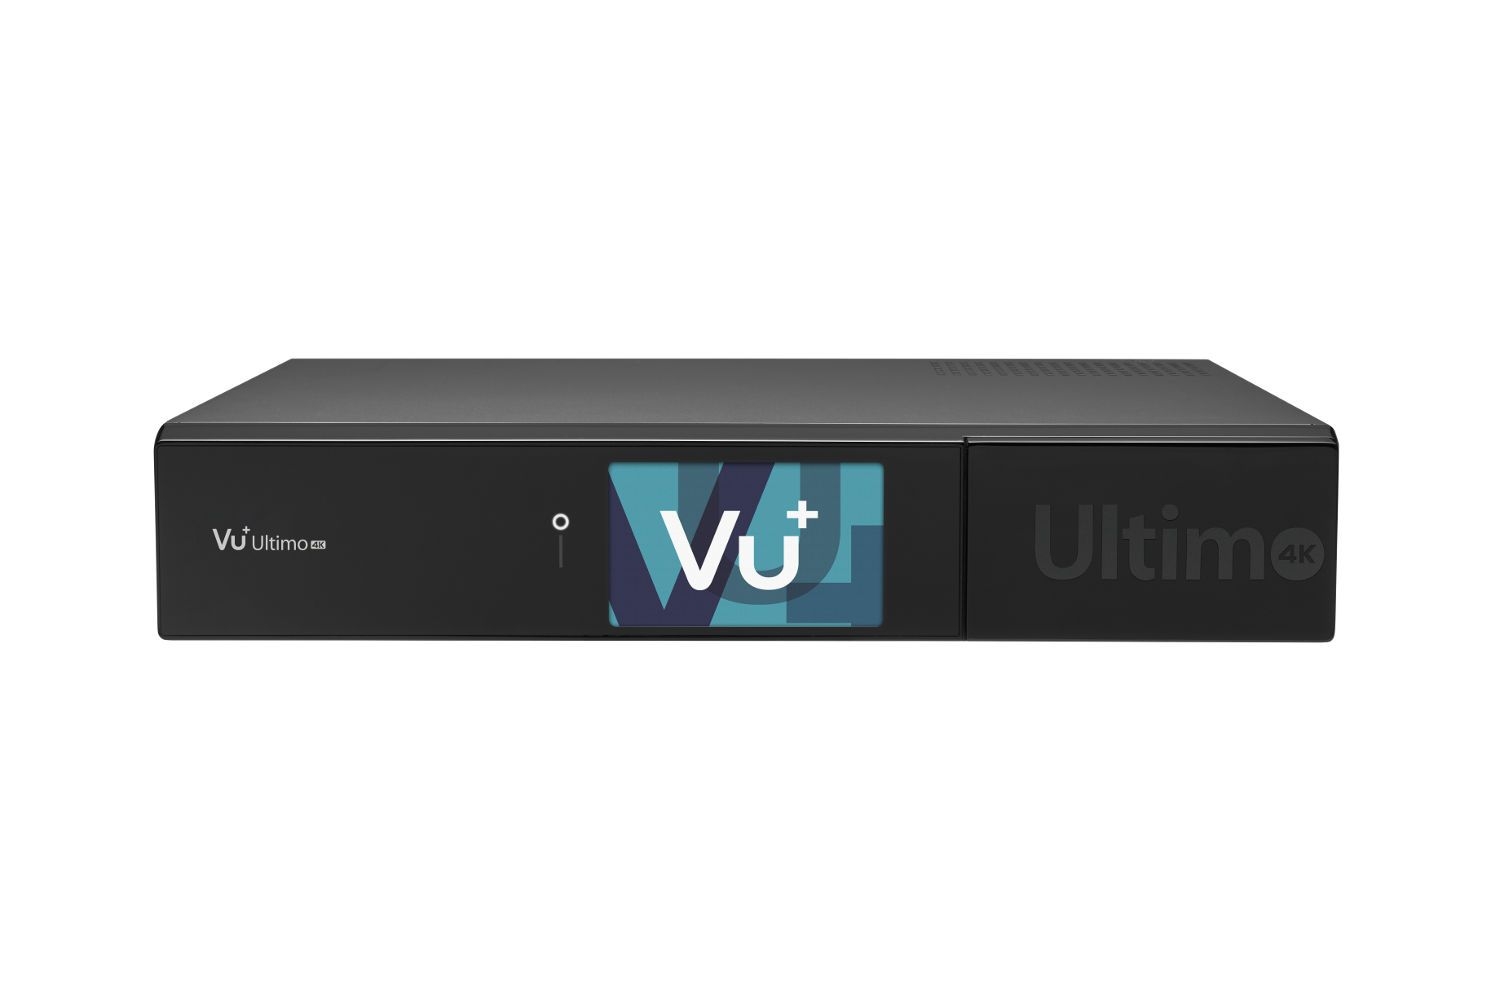 VU+ Ultimo 4K 1x DVB-C FBC / 1x DVB-S2 Tuner PVR ready Linux Receiver UHD 2160p